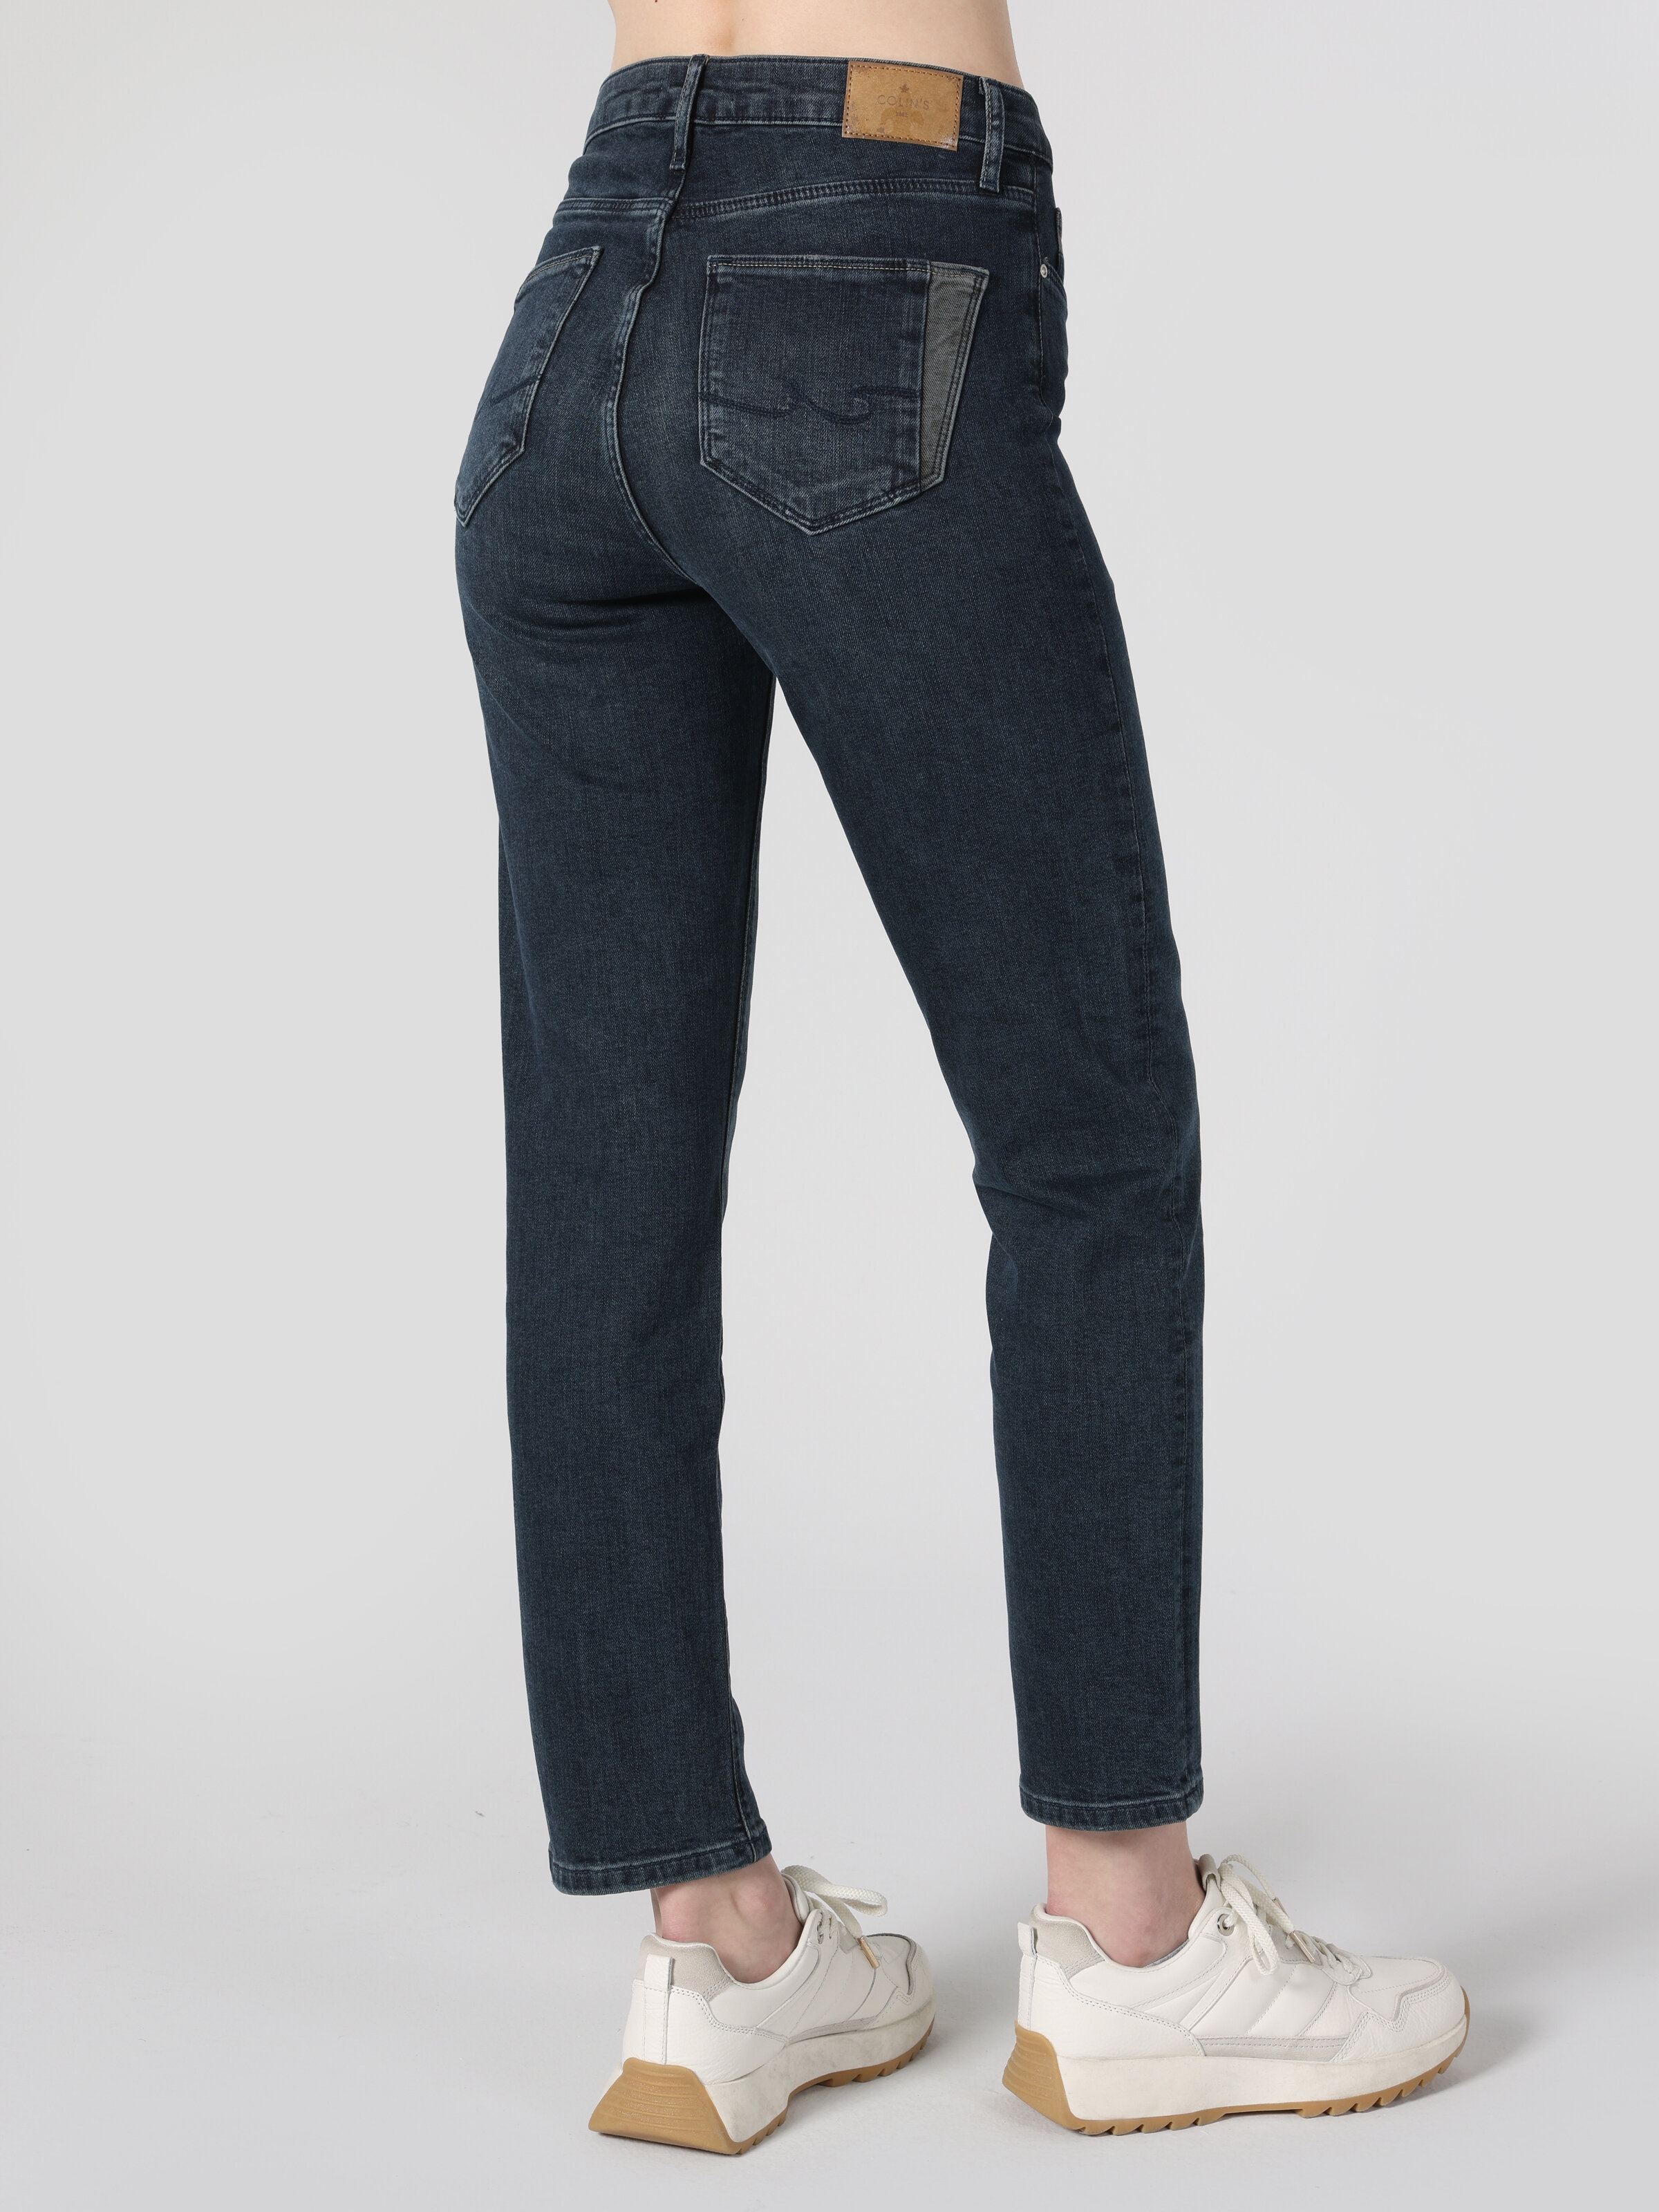 Afficher les détails de 703 Carla Slim Fit Taille Normale Jambe Droite Bleu Pantalon En Jean Pour Femme